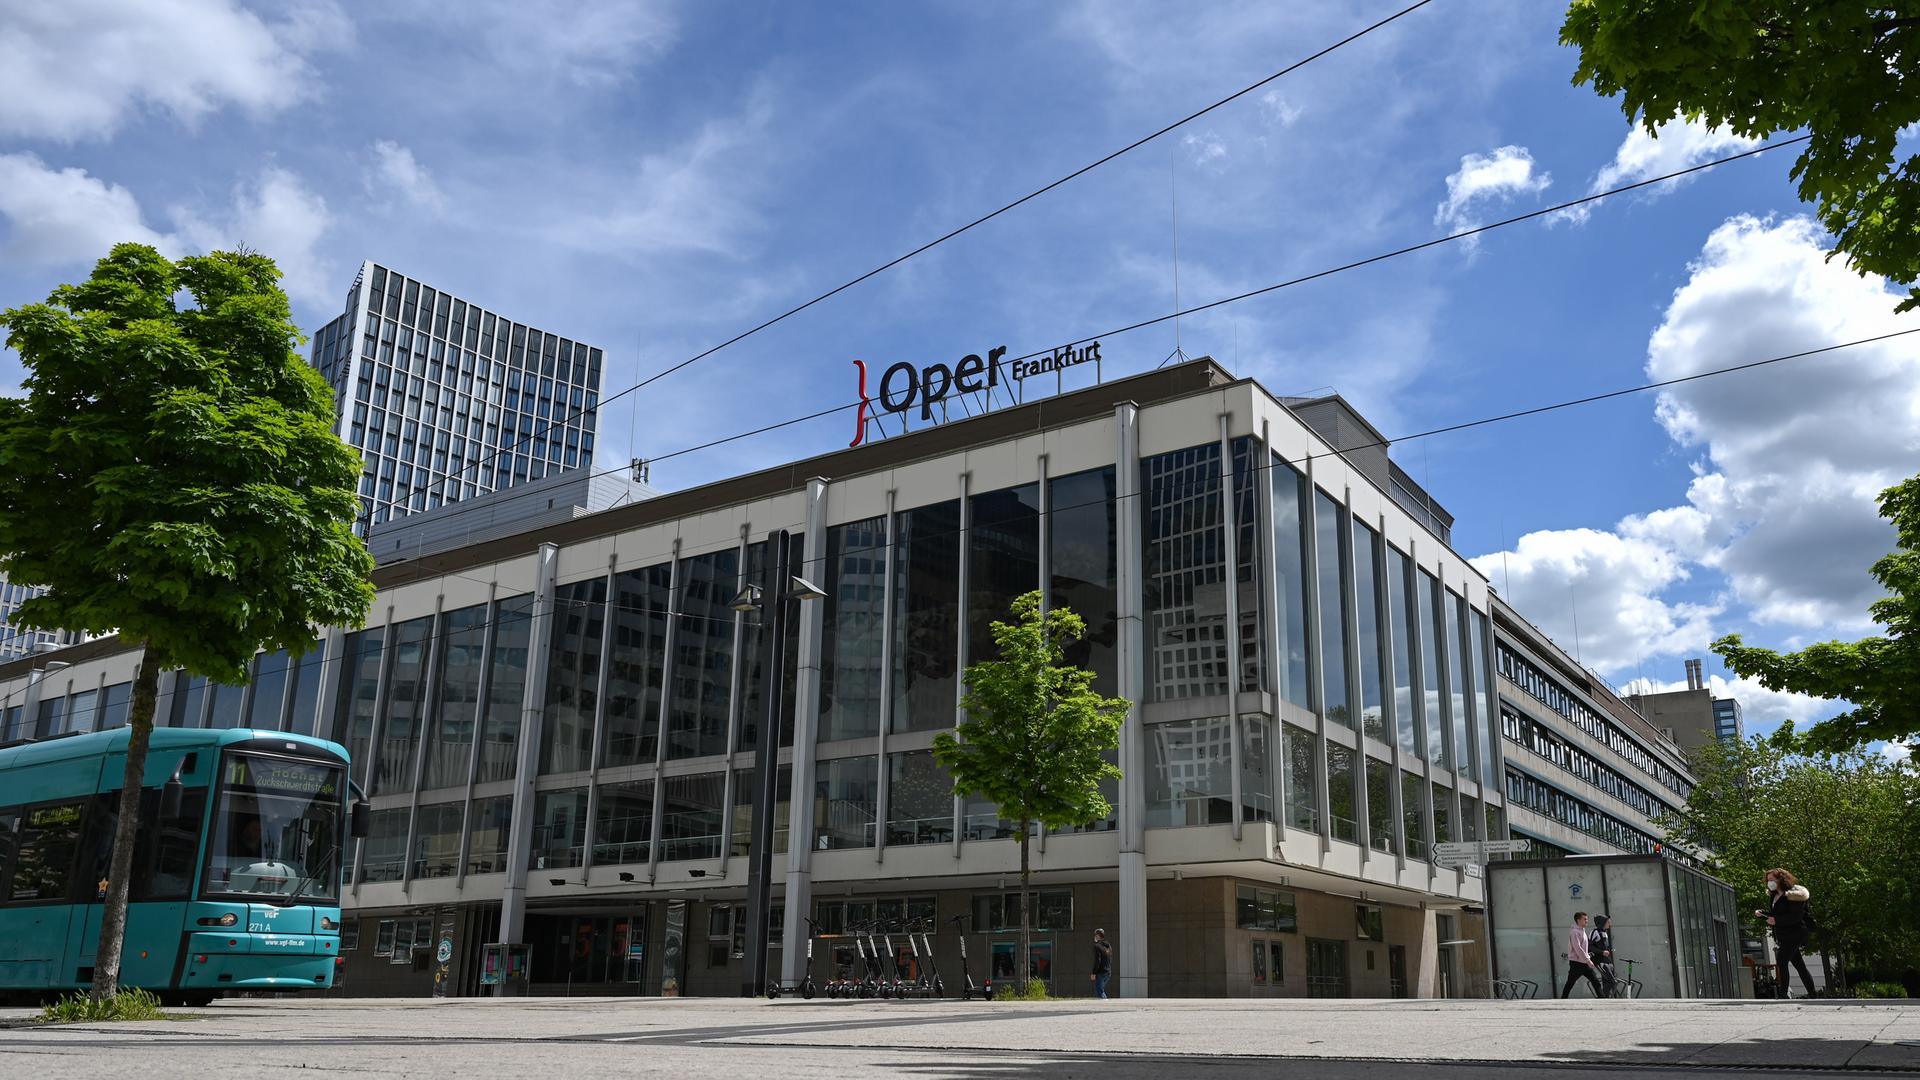 Umfrage - Oper Frankfurt ist "Opernhaus des Jahres"